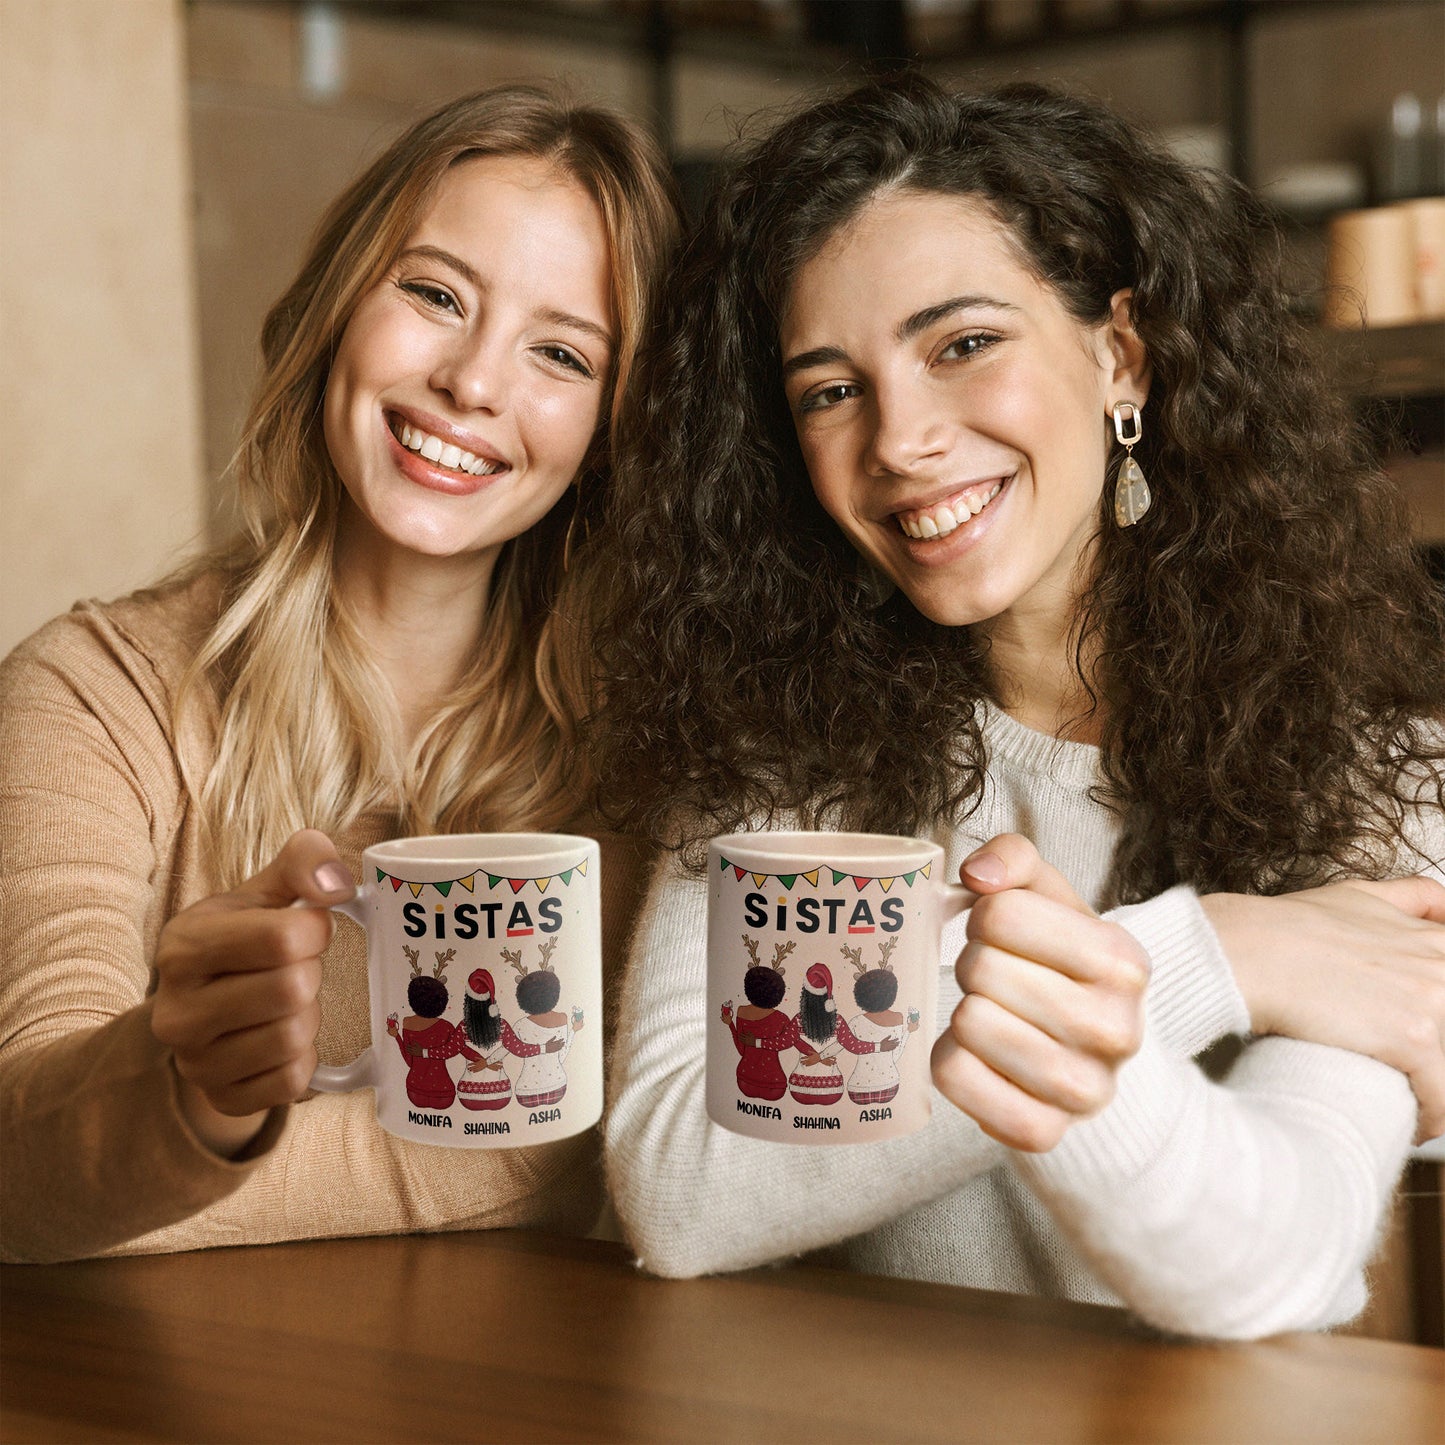 Sistas Soul Sisters - Personalized Mug - Christmas Gift For Sister